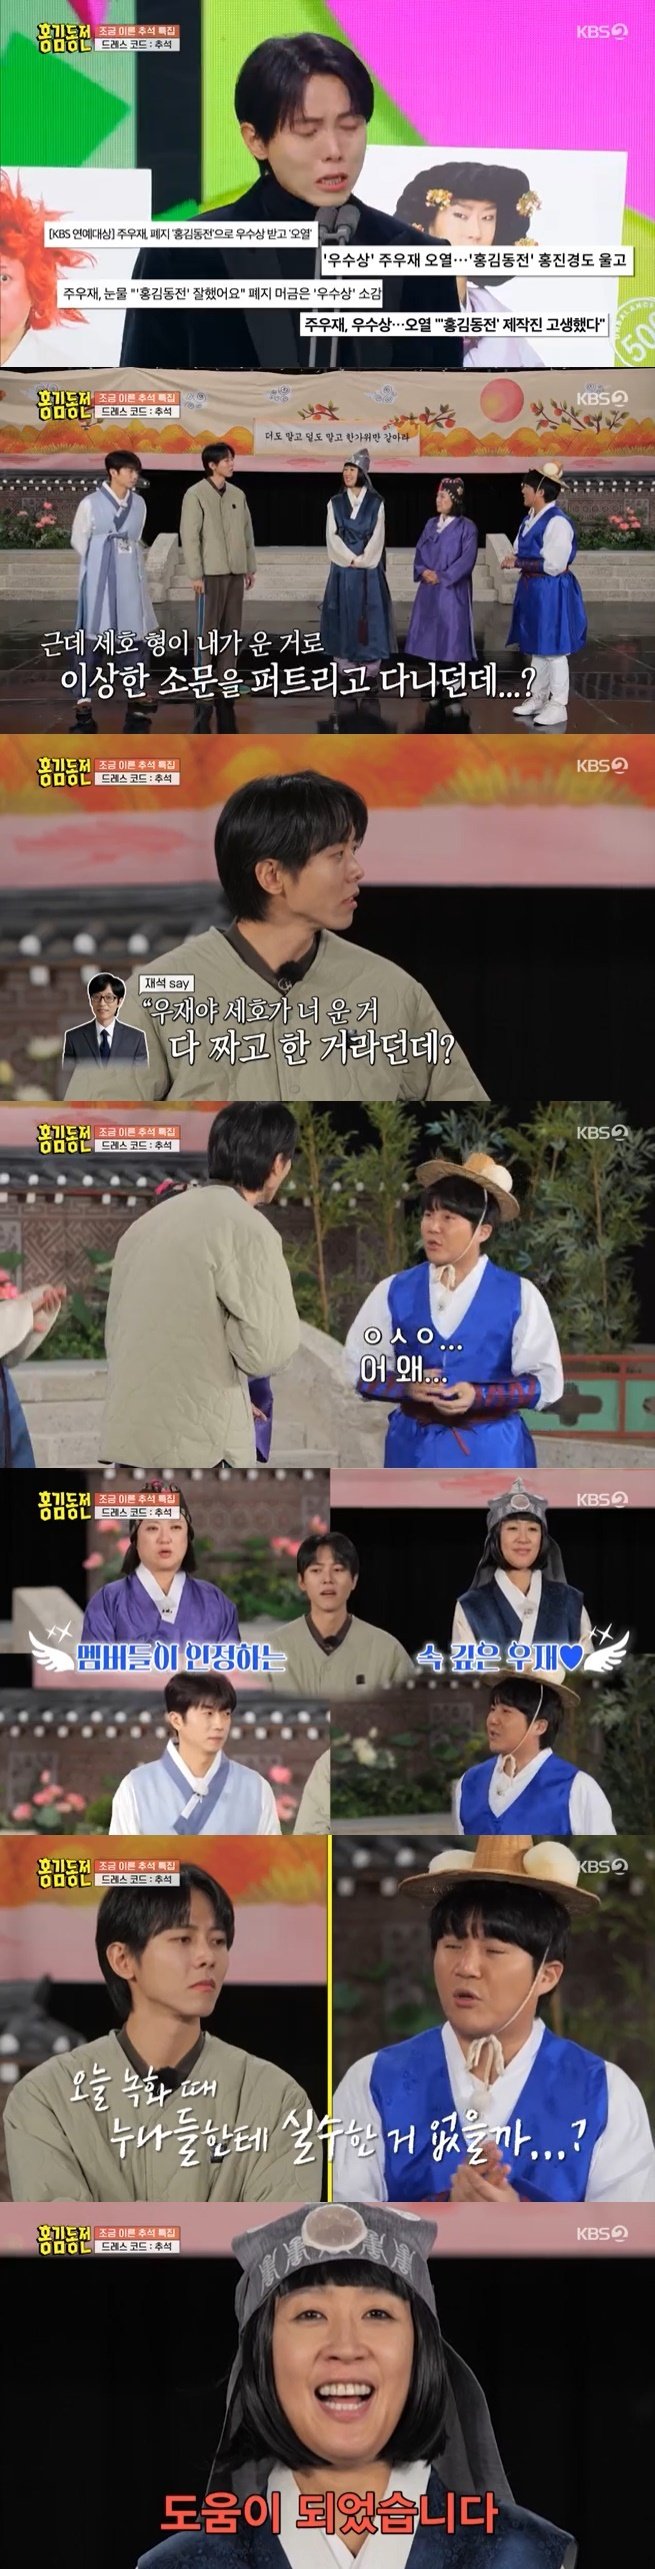 KBS 2TV '홍김동전' 캡처